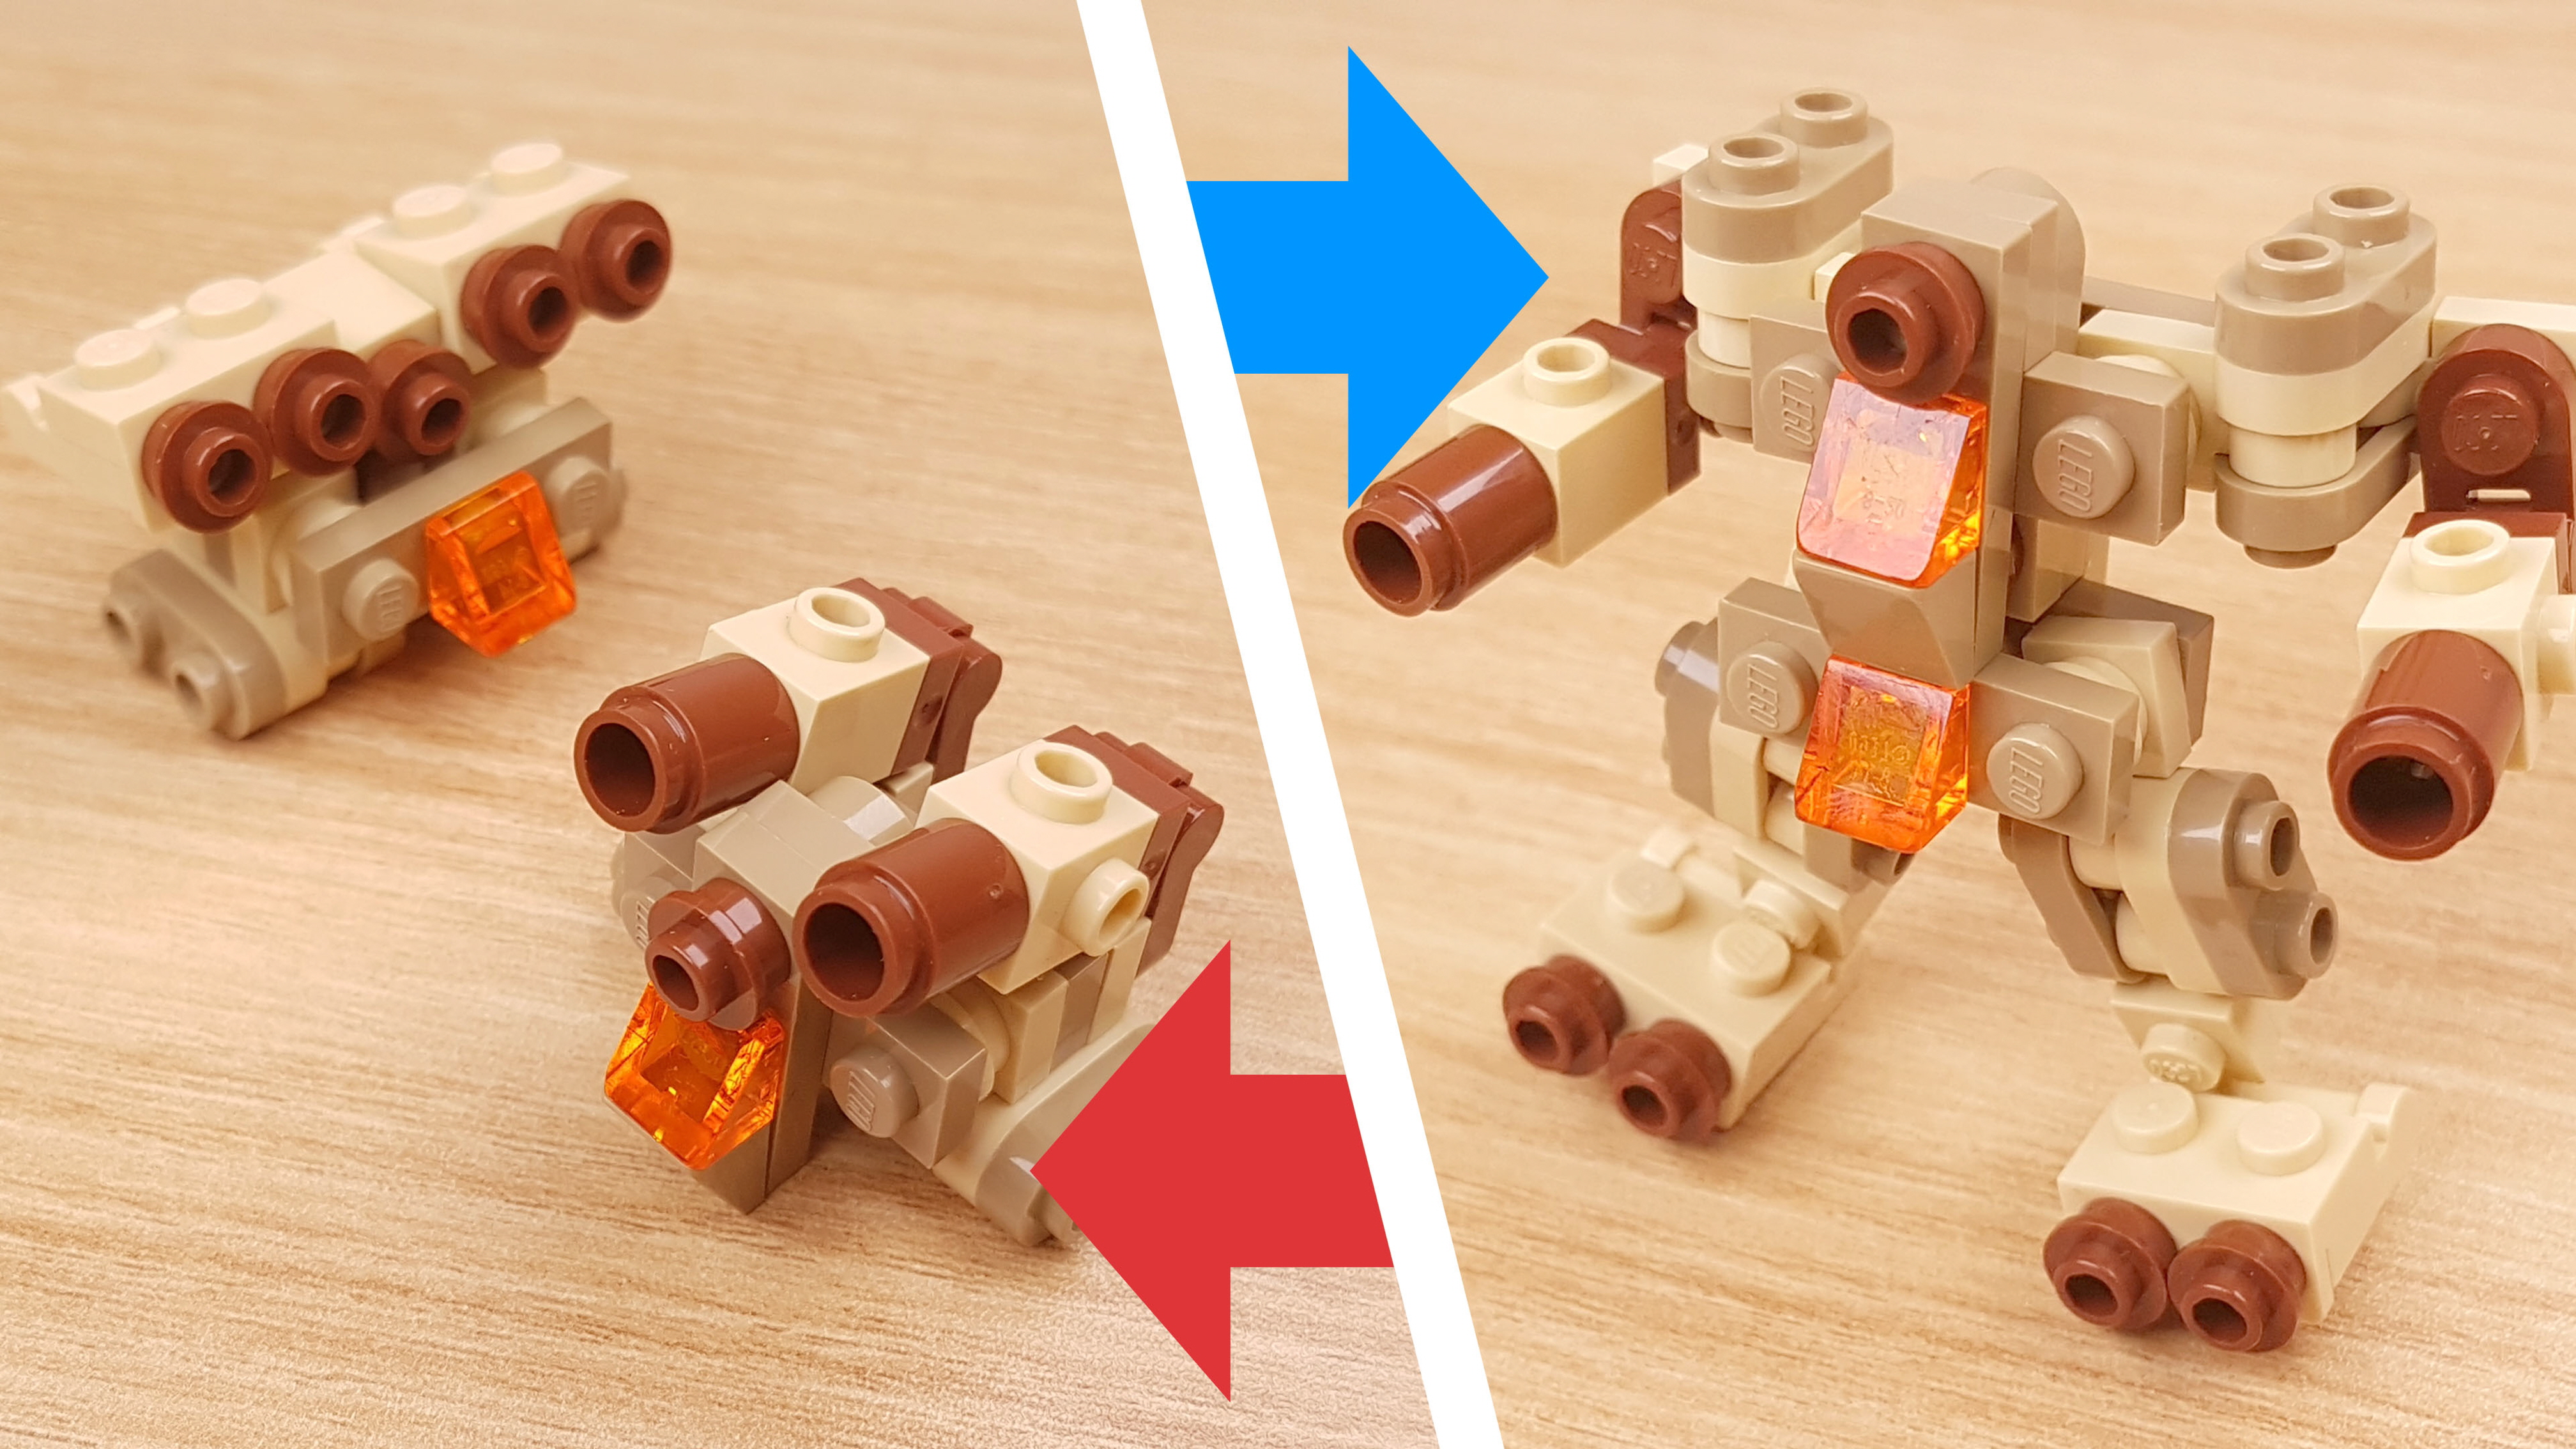 砂漠作戦用で開発した2段合体ミニレゴロボ - 「タン・ボット」
 0 - 変身,変身ロボ,レゴ変身ロボ